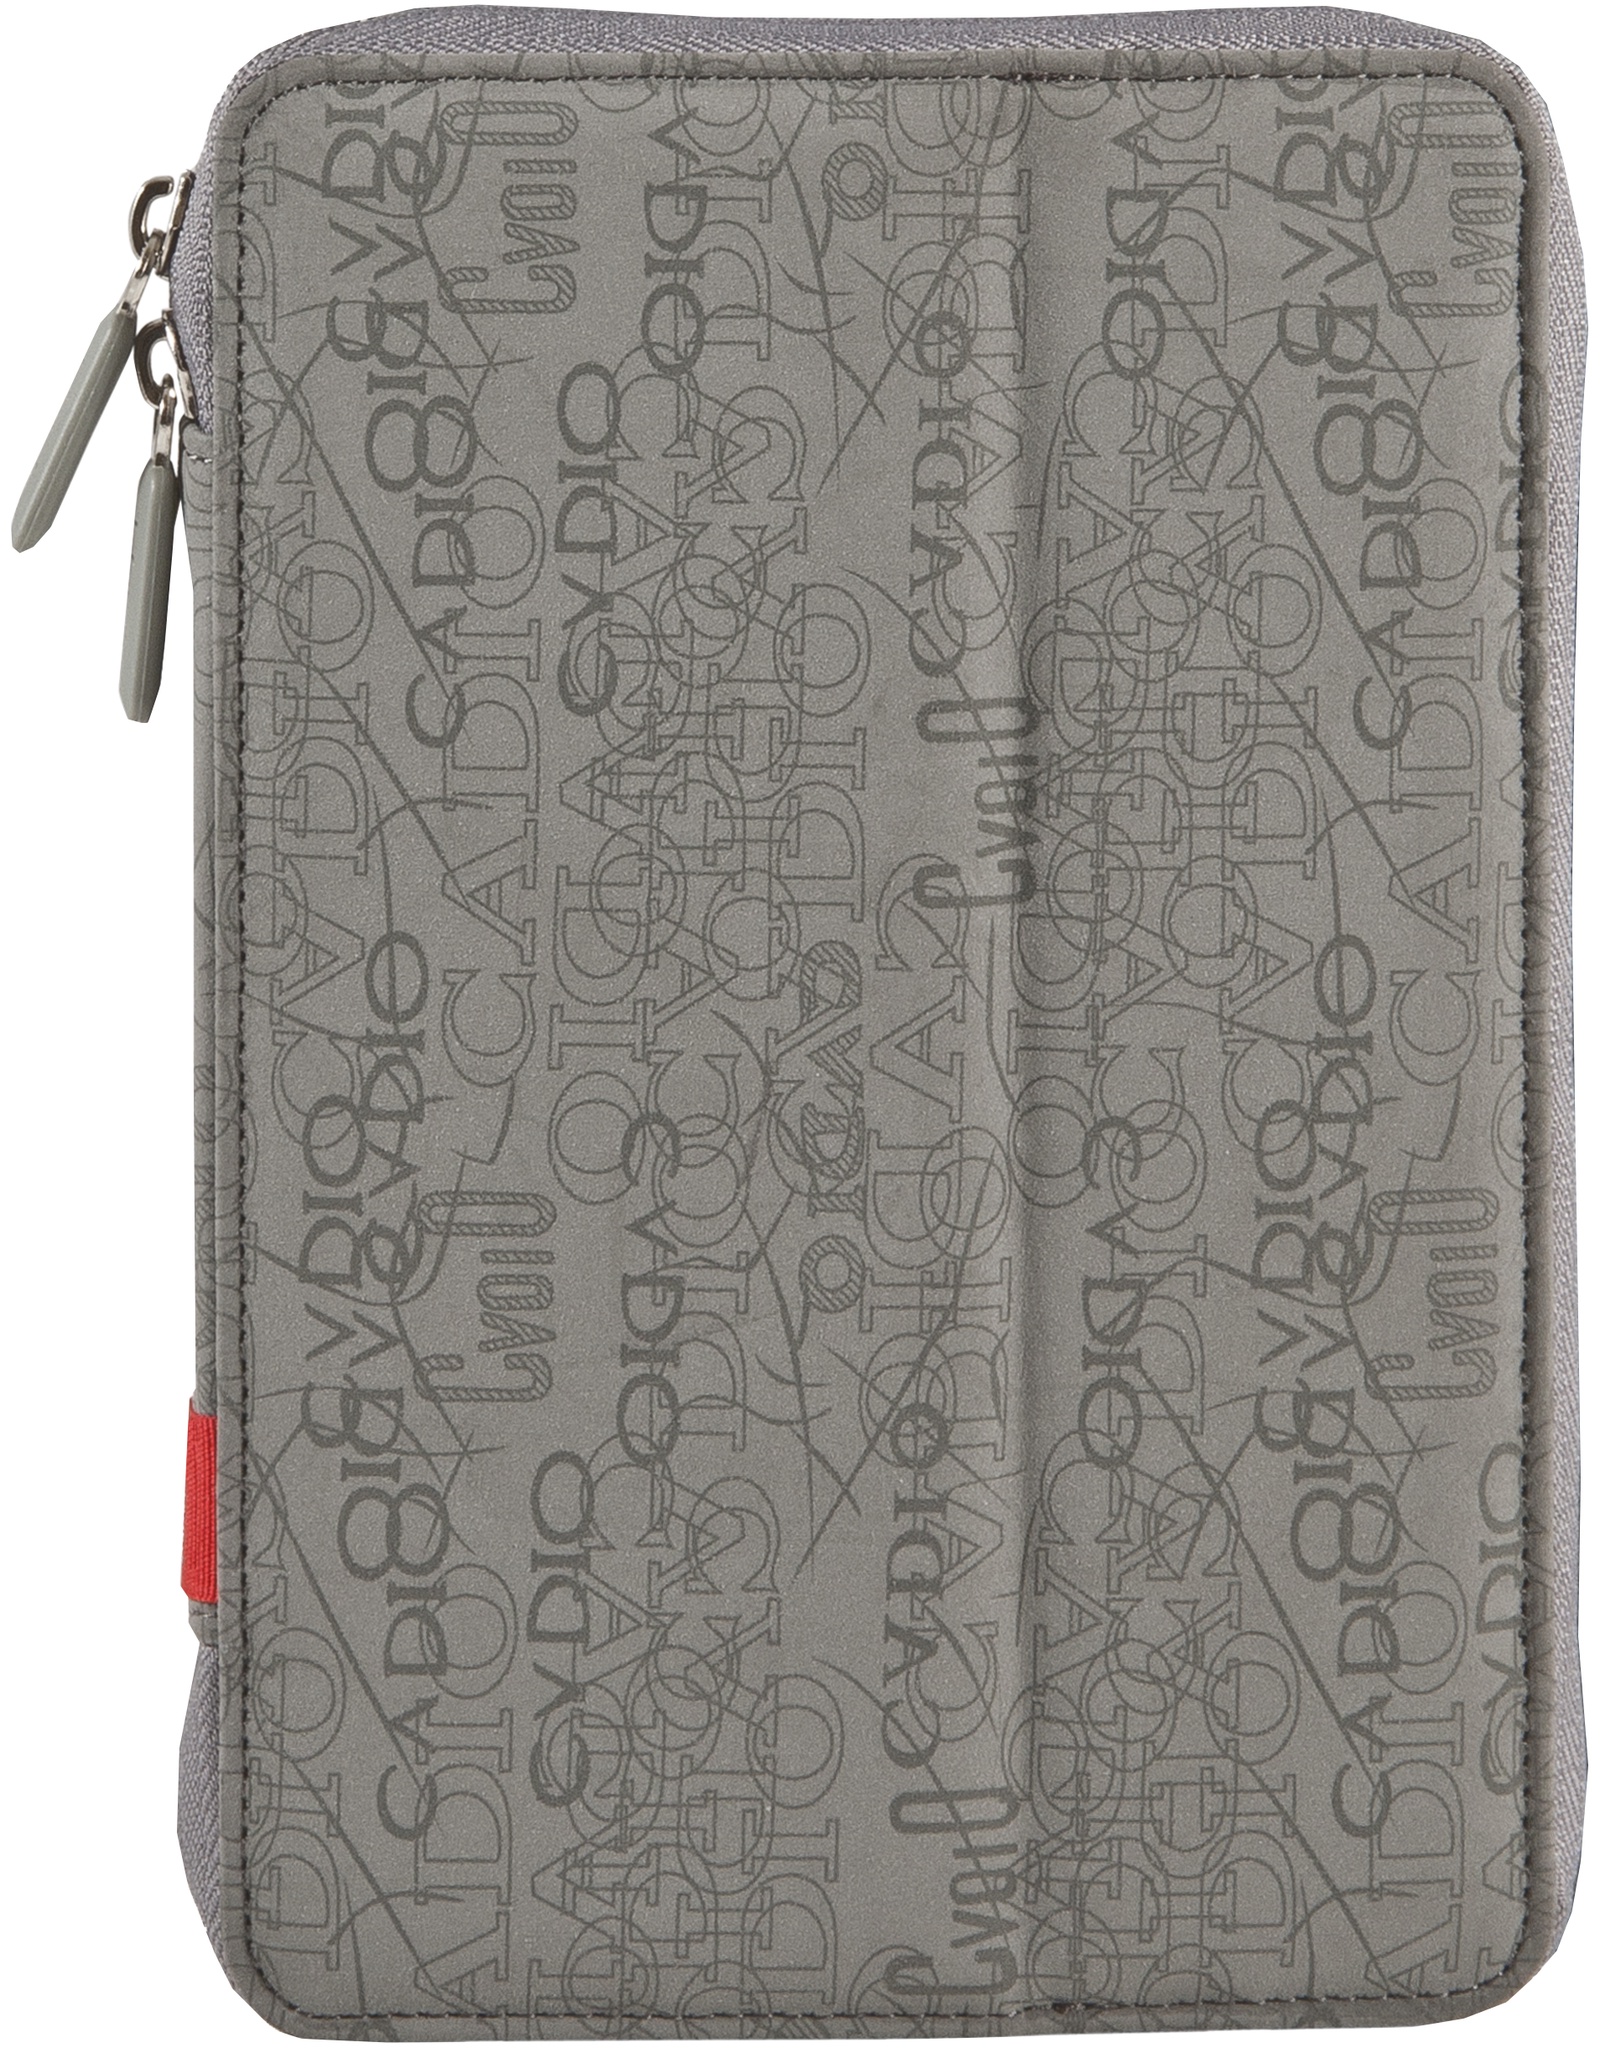 Чехол для планшета Defender Tablet purse uni, 26017, серый